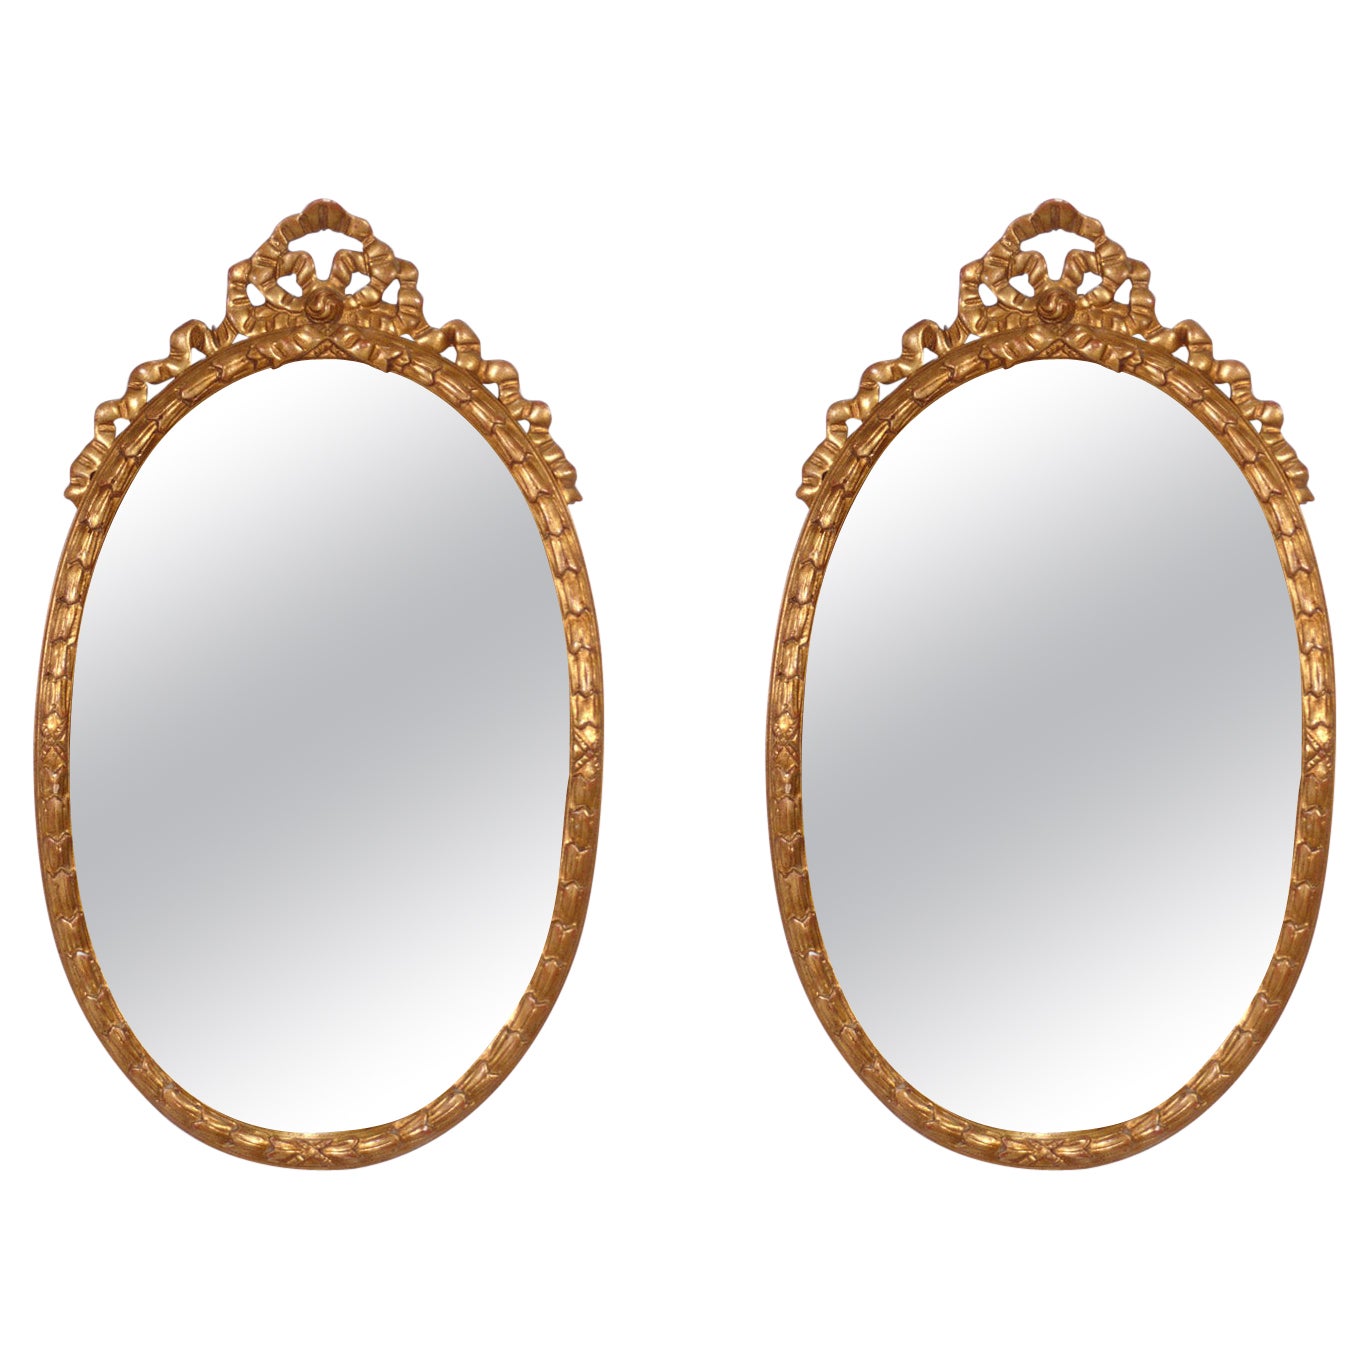 Paire de miroirs italiens ovales dorés de style rococo de l'hôtel Carlyle NYC